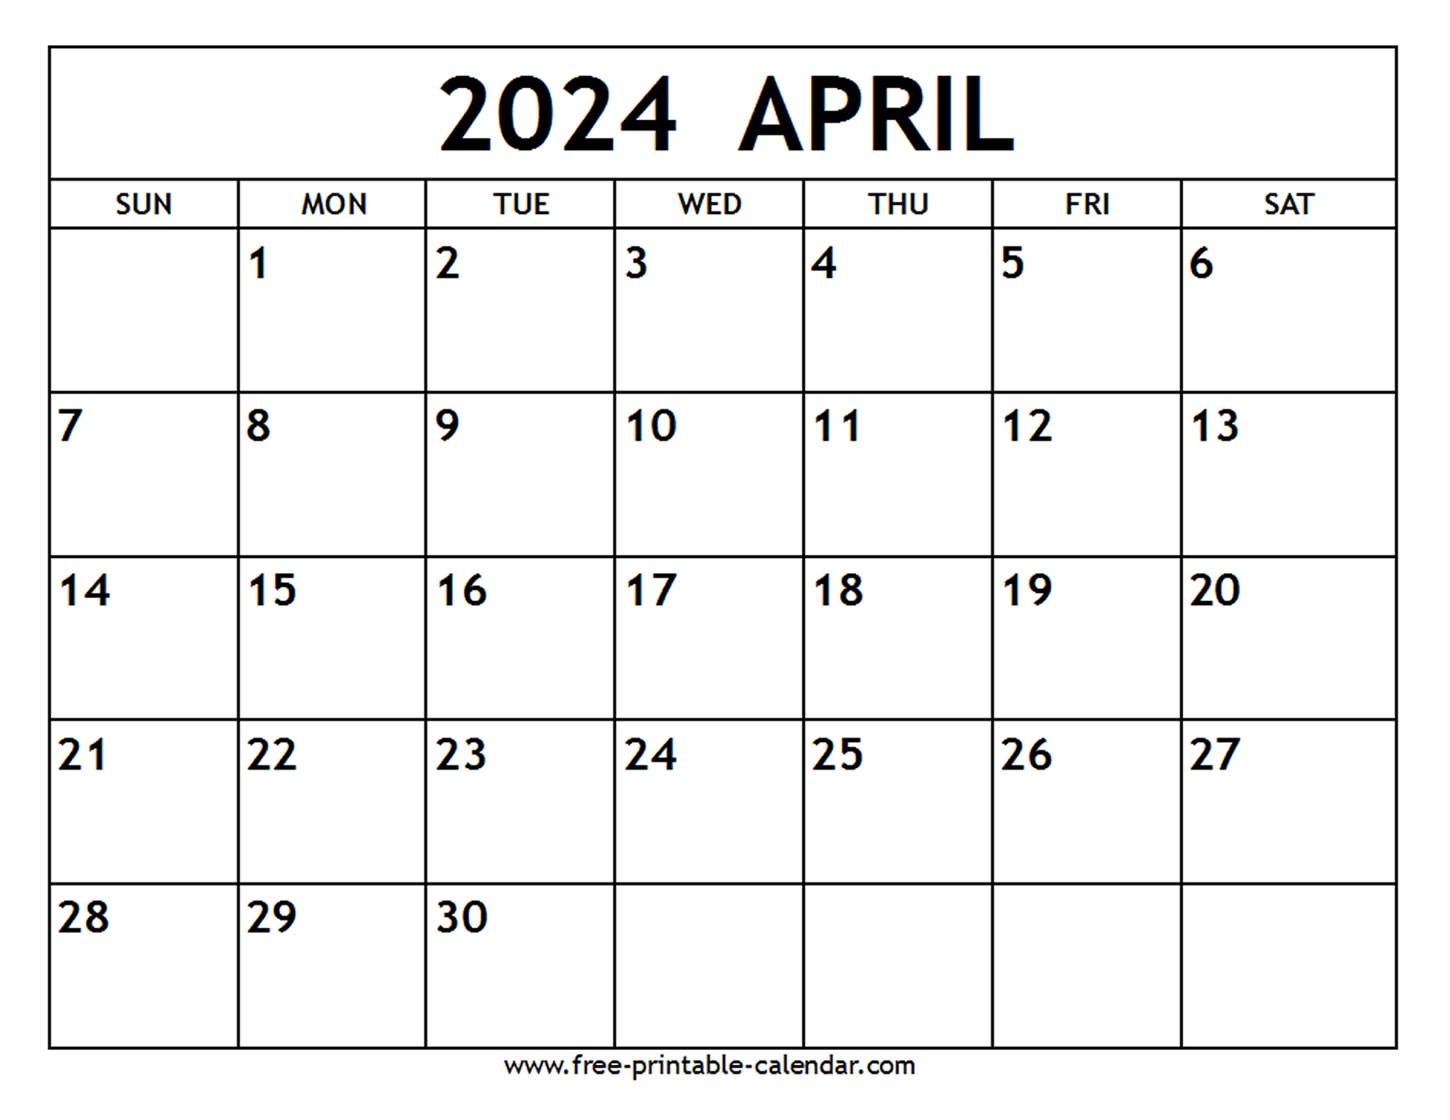 April 2024 Calendar - Free-Printable-Calendar in Free Printable April 2024 Calendar With Lines